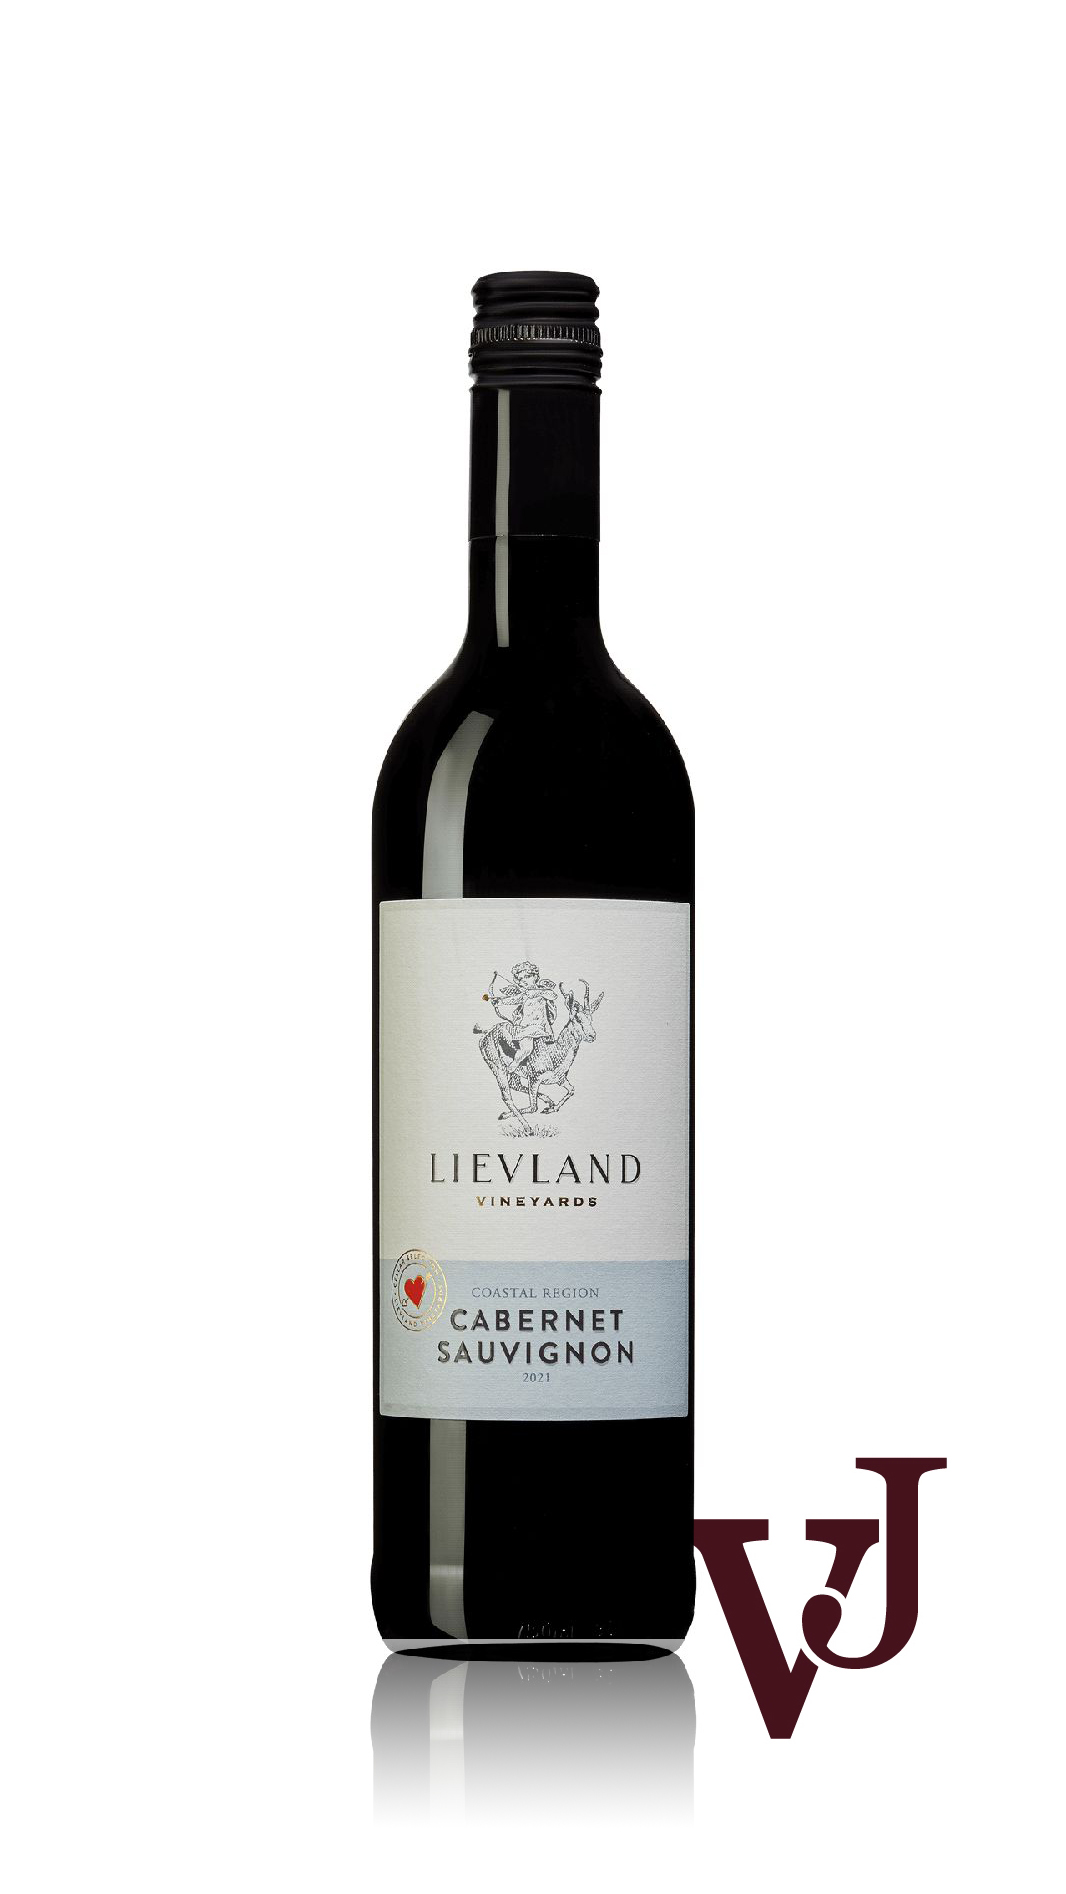 Rött Vin - Lievland Cellar Selection Cabernet Sauvignon 2021 artikel nummer 253401 från producenten Lievland Vineyards från Sydafrika